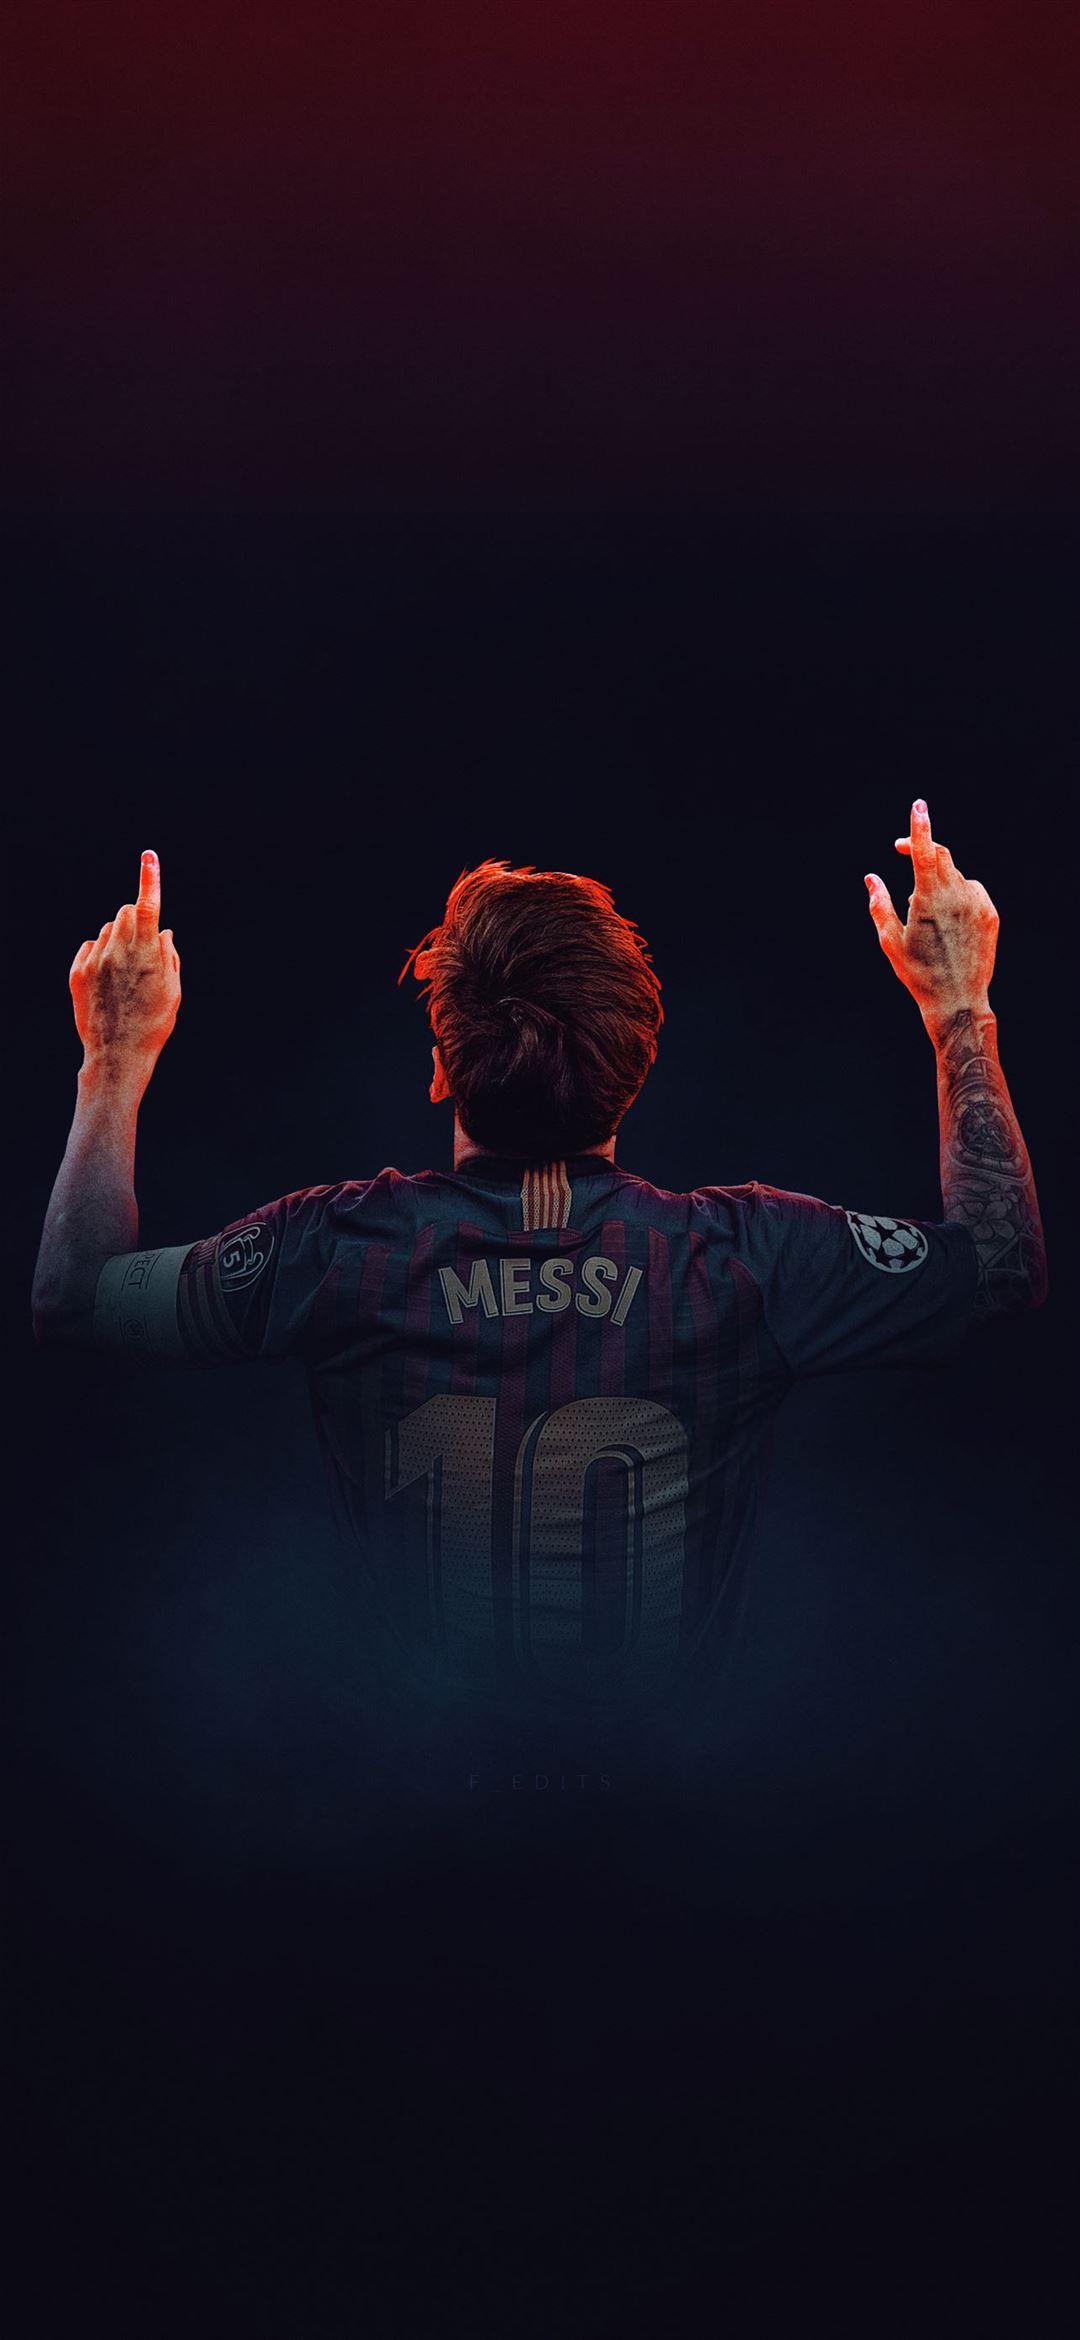 Đừng bỏ lỡ cơ hội để tải về những hình nền iPad của Lionel Messi. Hình ảnh HD này sẽ tạo cho bạn cảm giác như ngồi trên khán đài và nhìn ngắm Messi thể hiện tài năng trên sân cỏ. Tận hưởng những thước phim đặc biệt của Messi trên iPad của bạn ngay bây giờ.